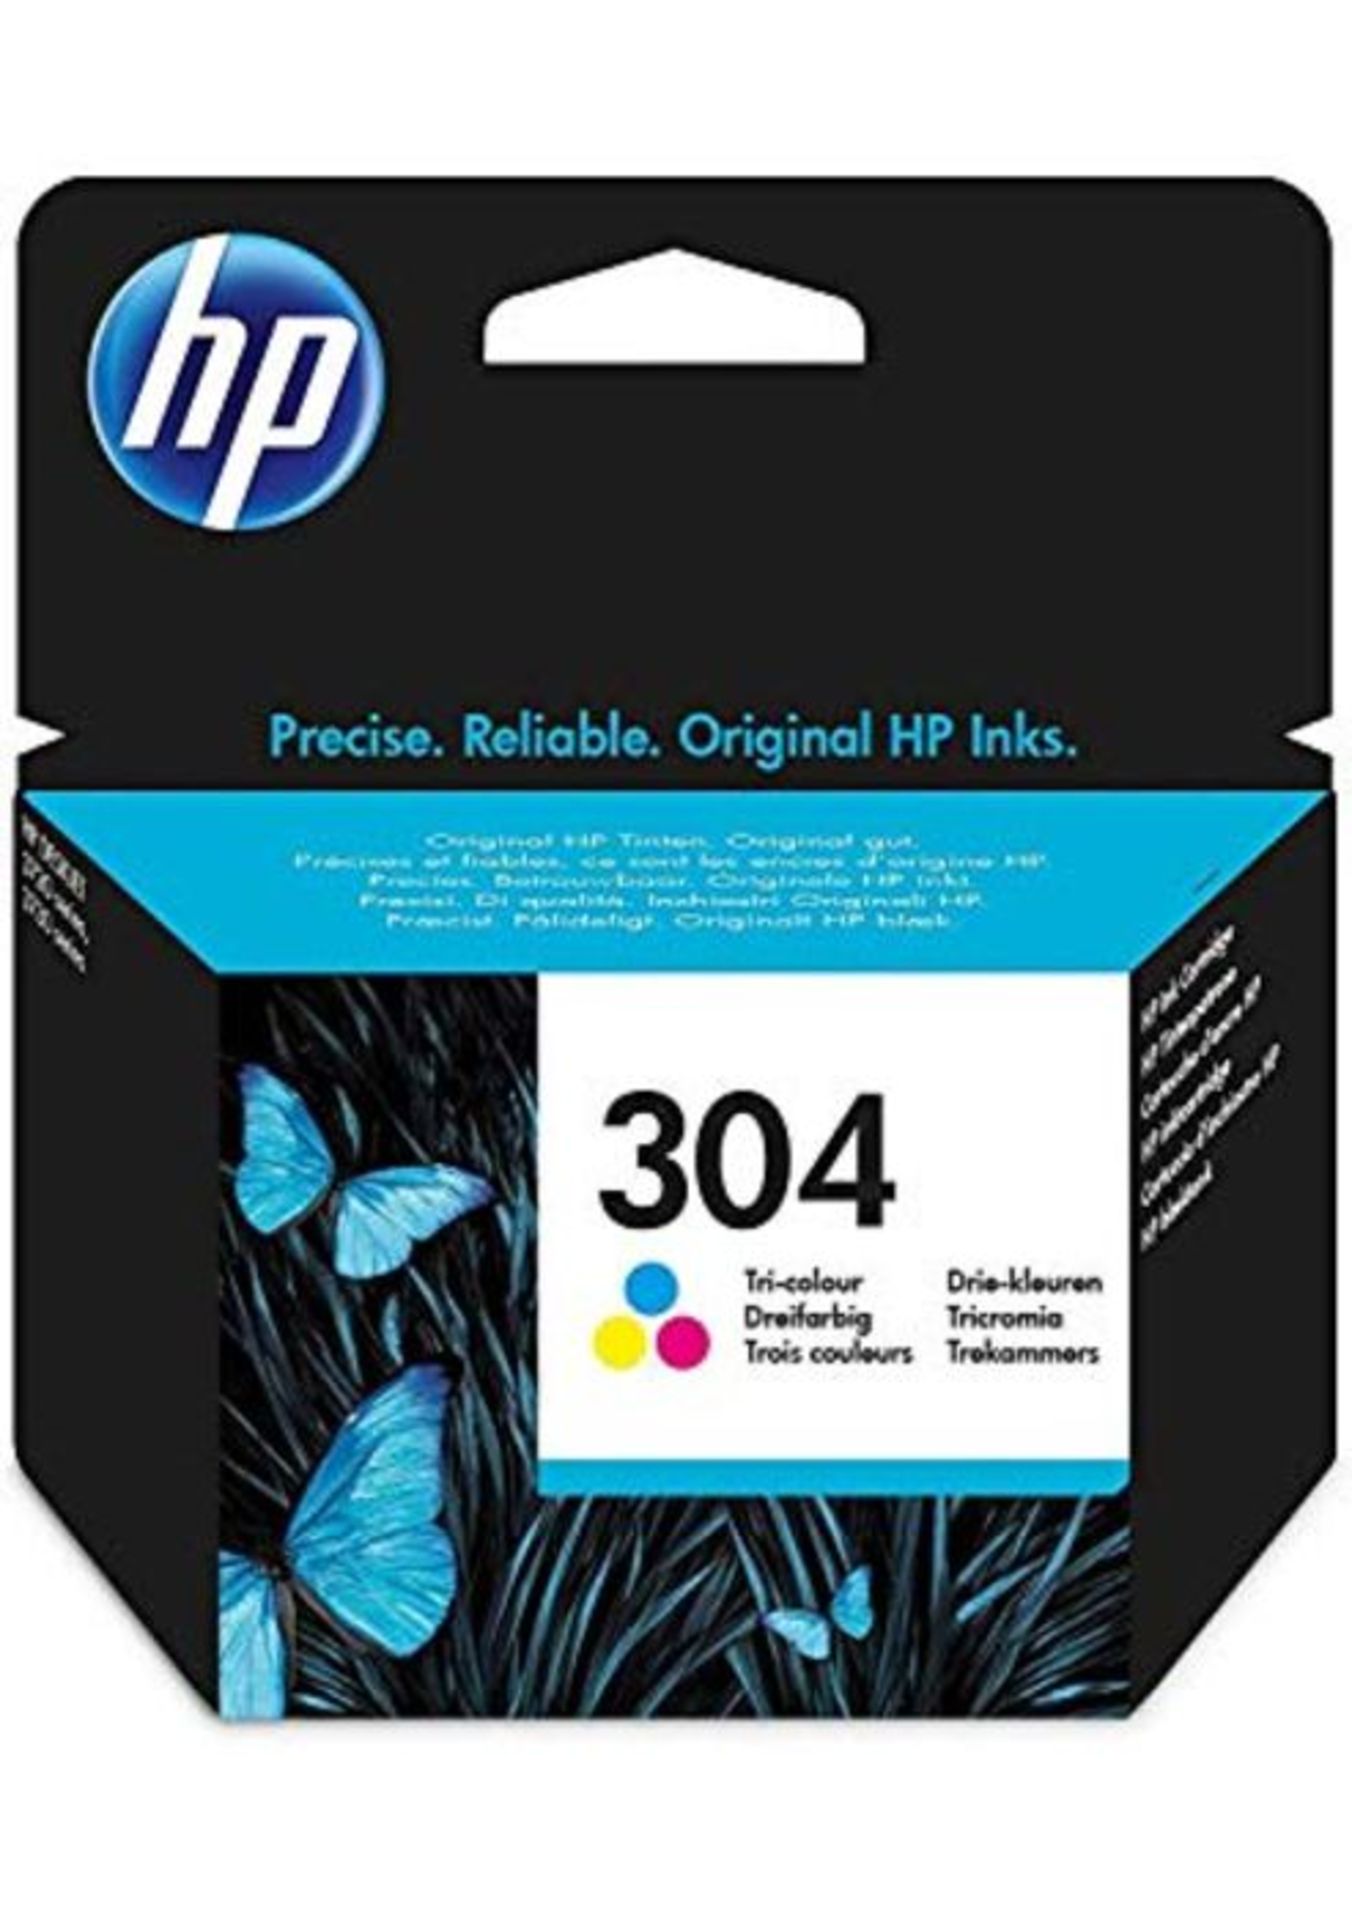 HP N9K05AE 304 Original Ink Cartridge, Tri-Color, Single Pack - Image 3 of 4